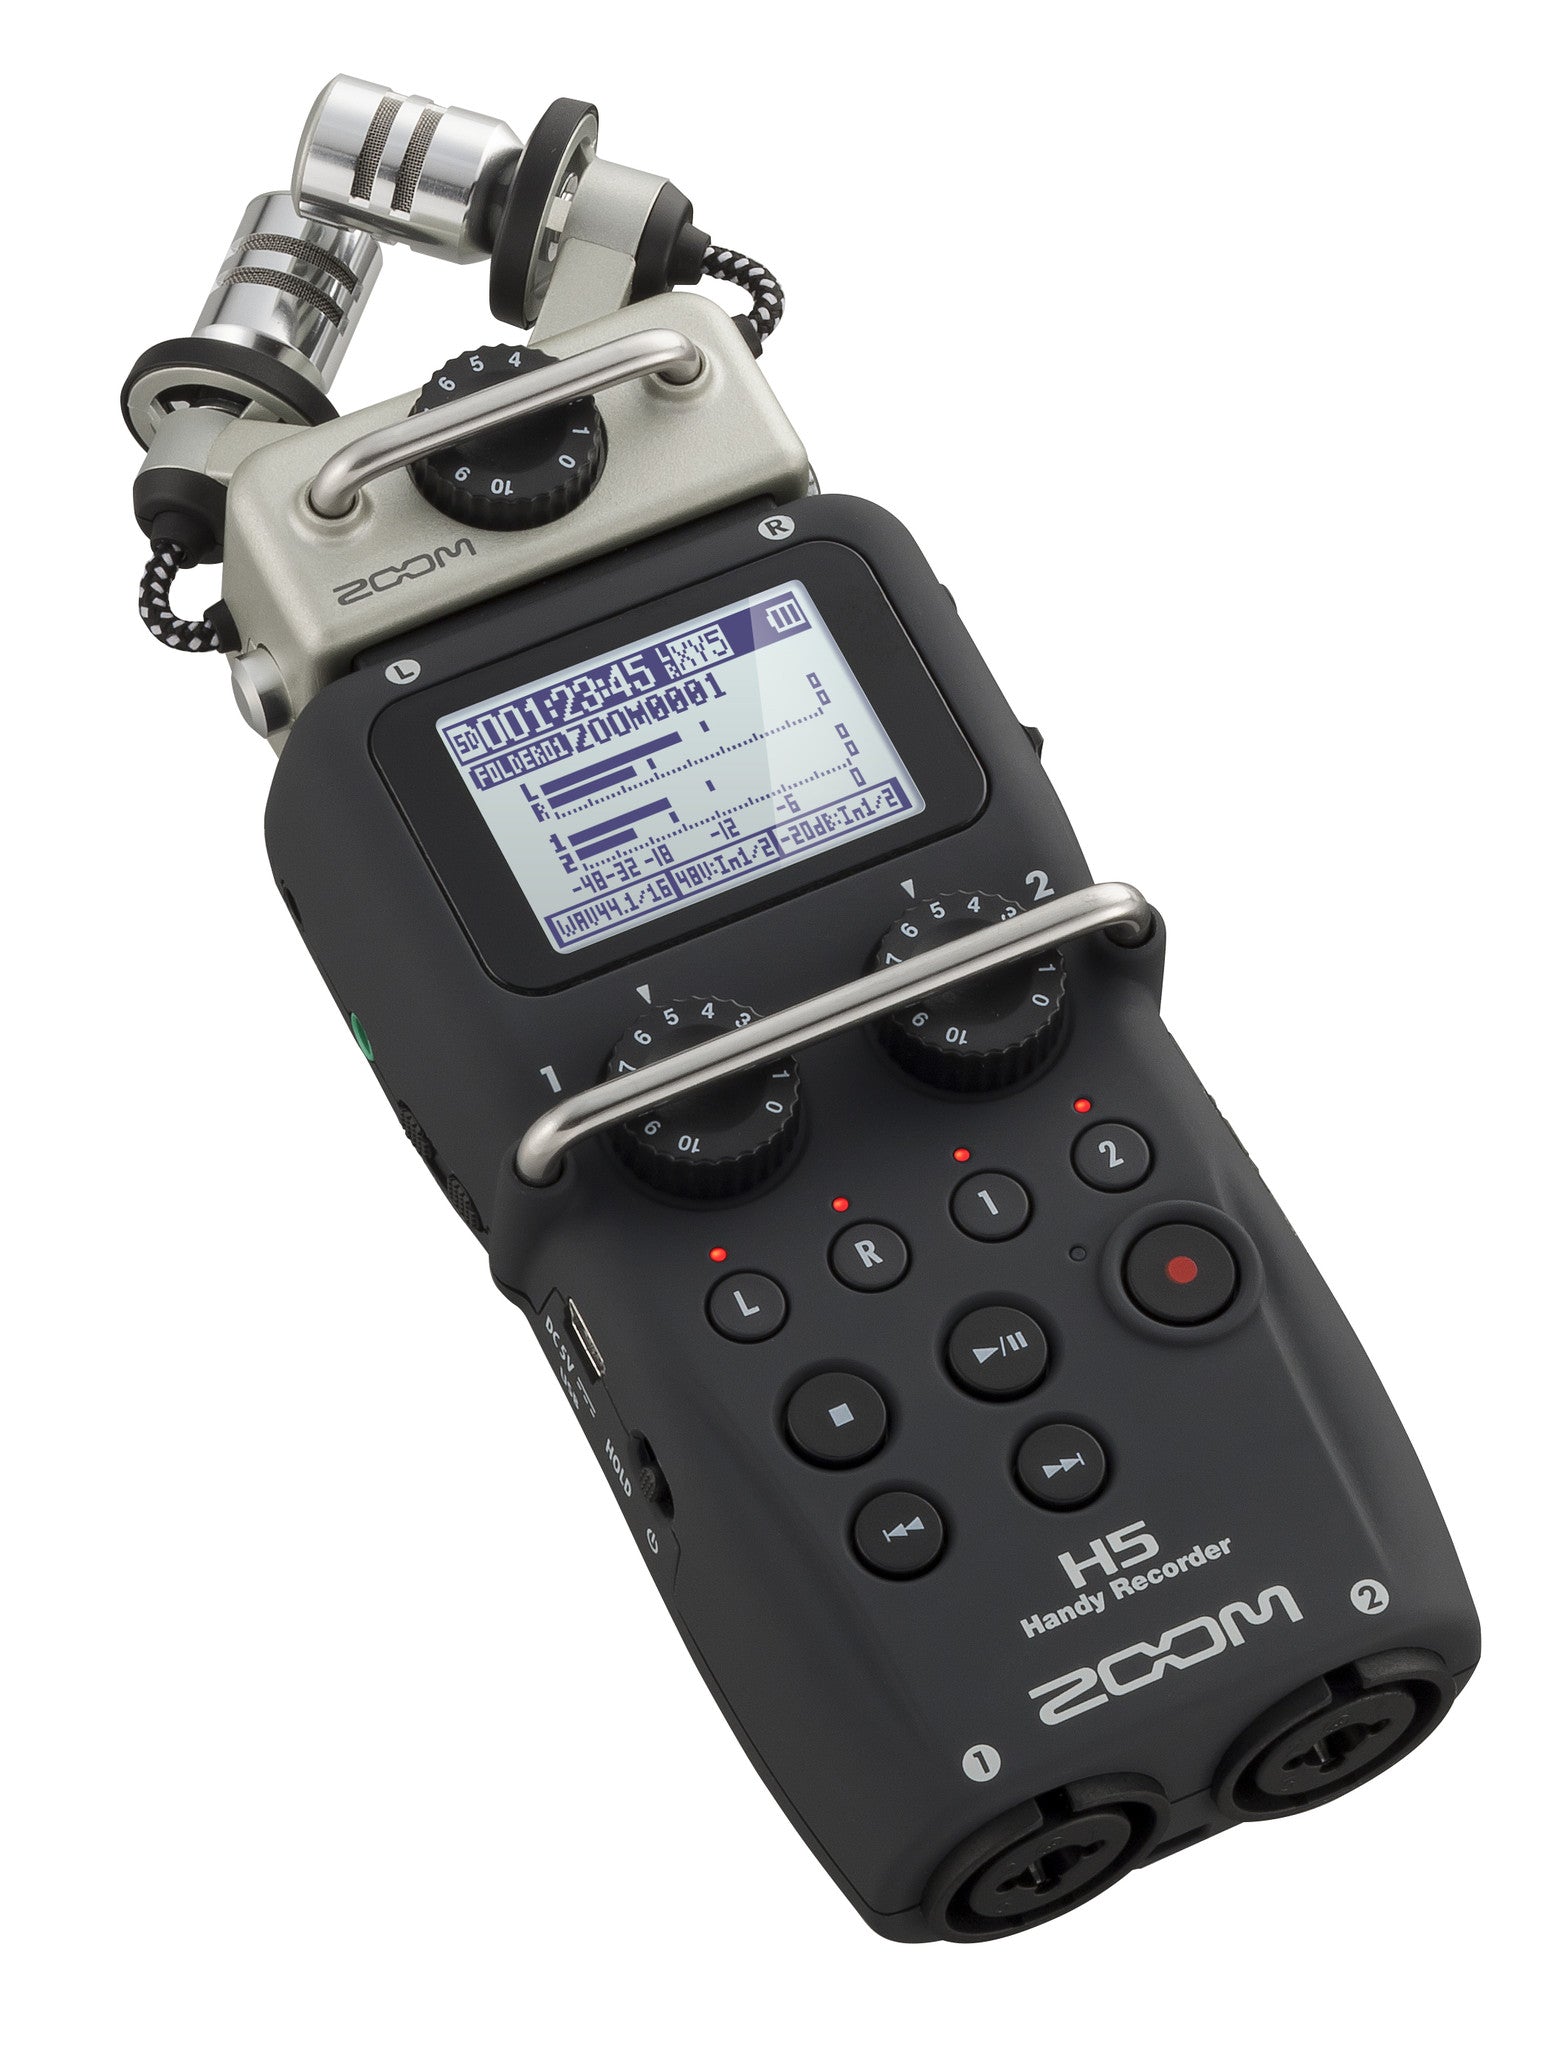 Zoom H5 Handy Recorder, video audio microphones & recorders, Zoom - Pictureline  - 3